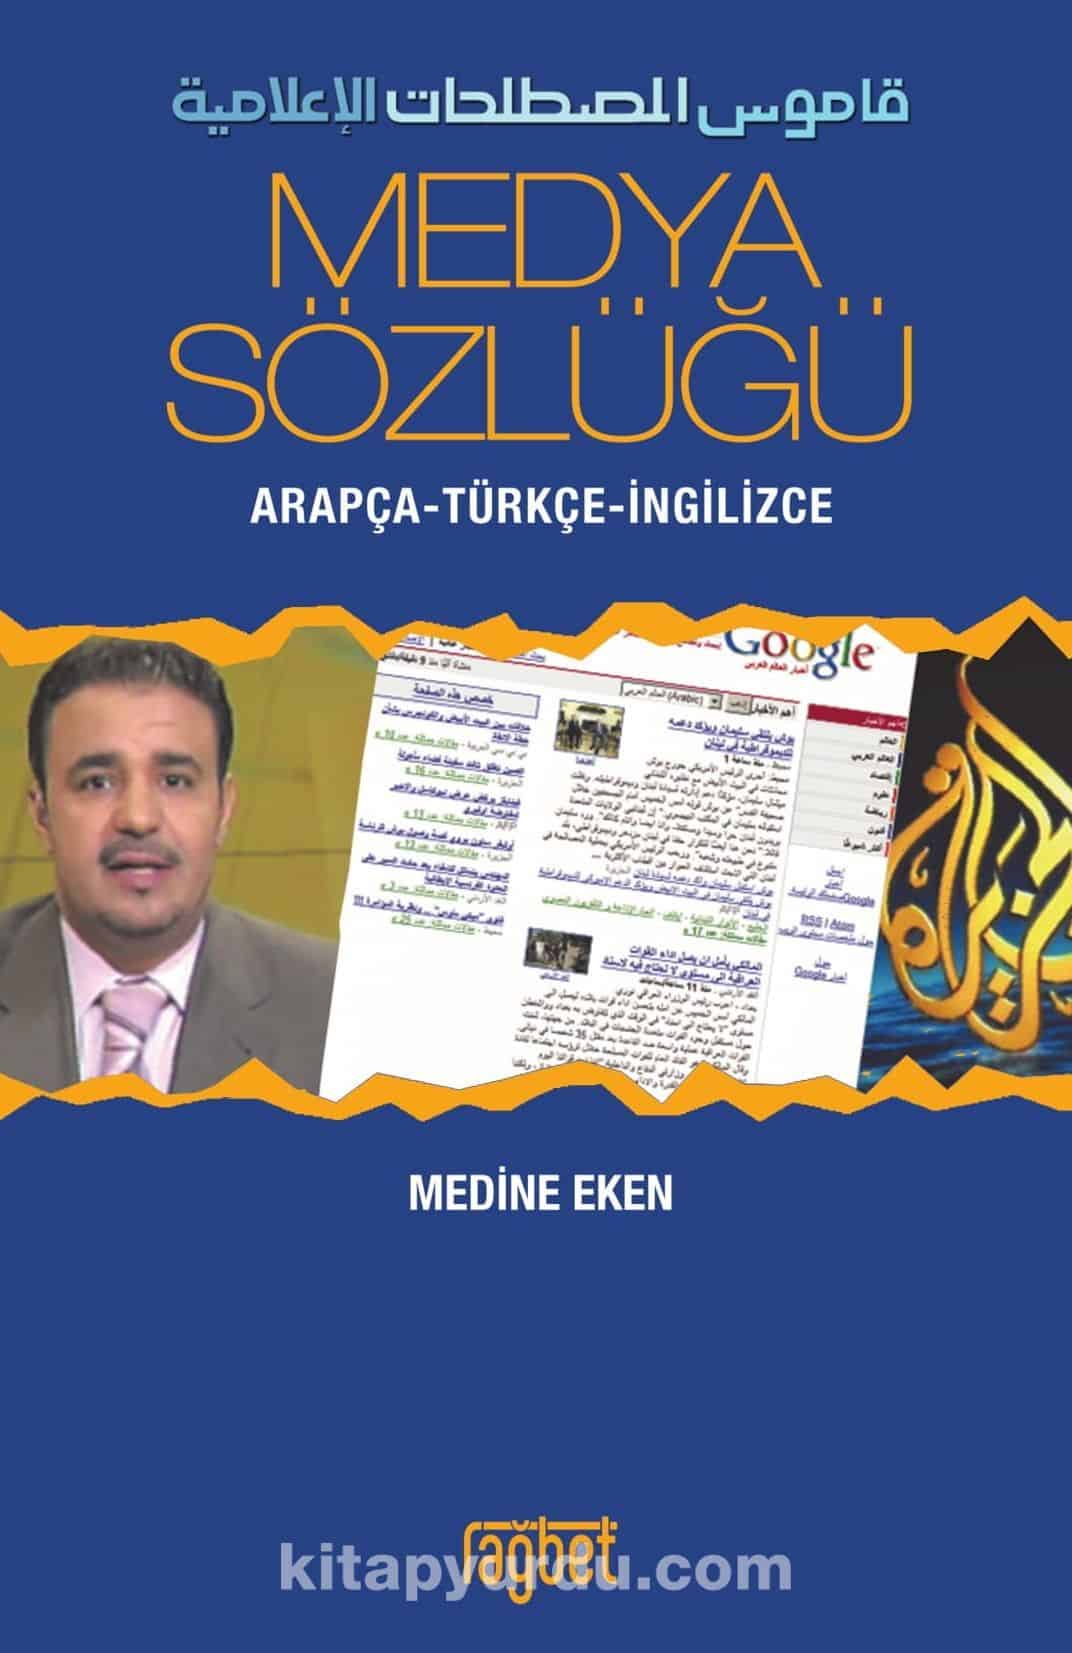 Medya Sözlüğü & Arapça-Türkçe-İngilizce